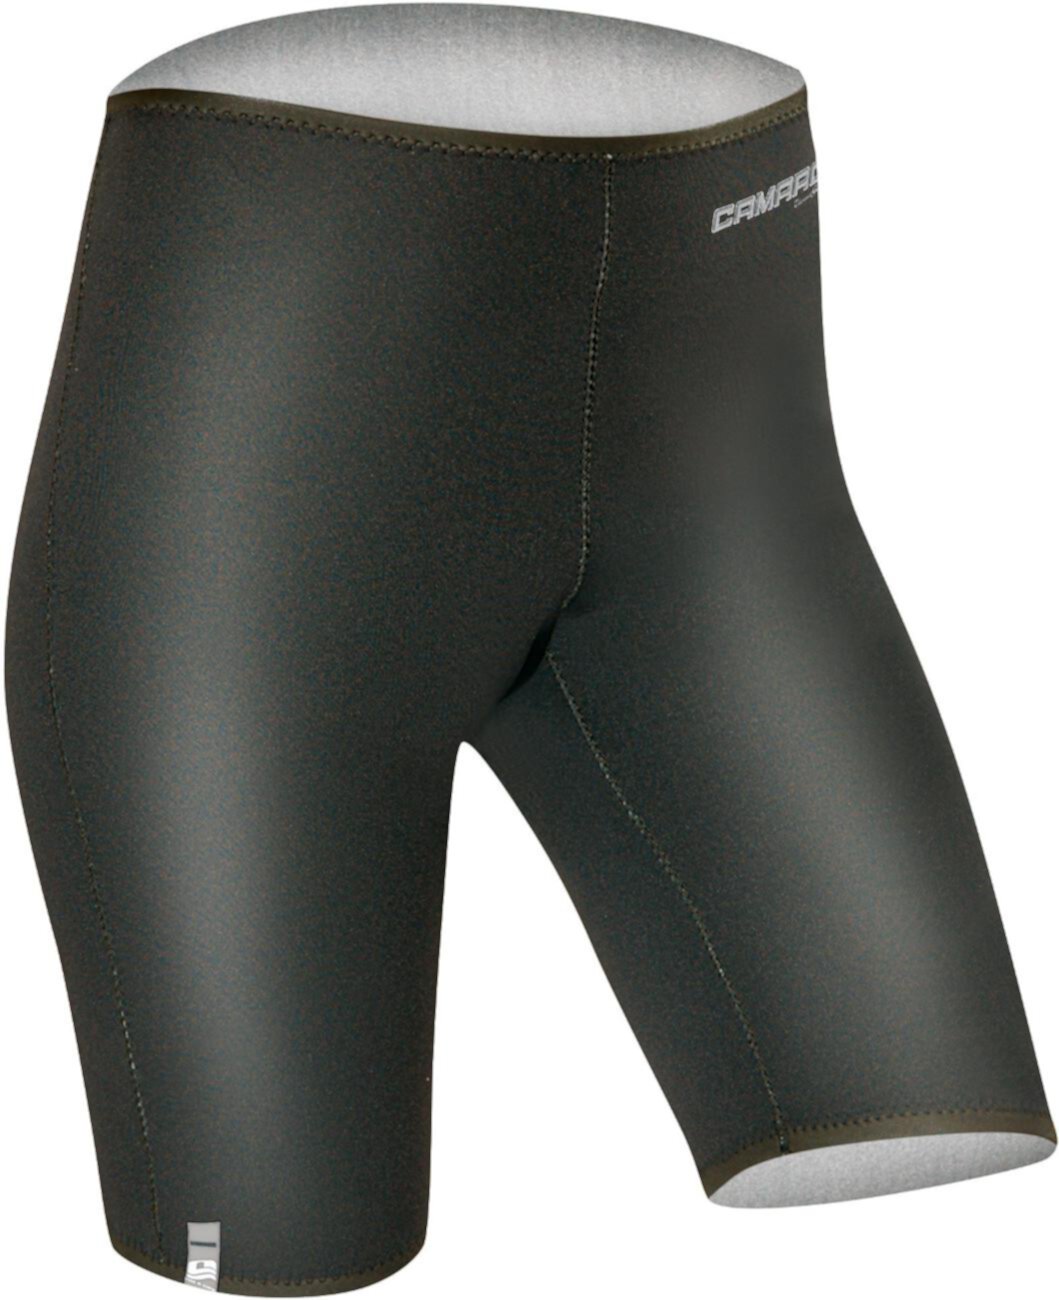 Titanium Tight Wetsuit Shorts Camaro